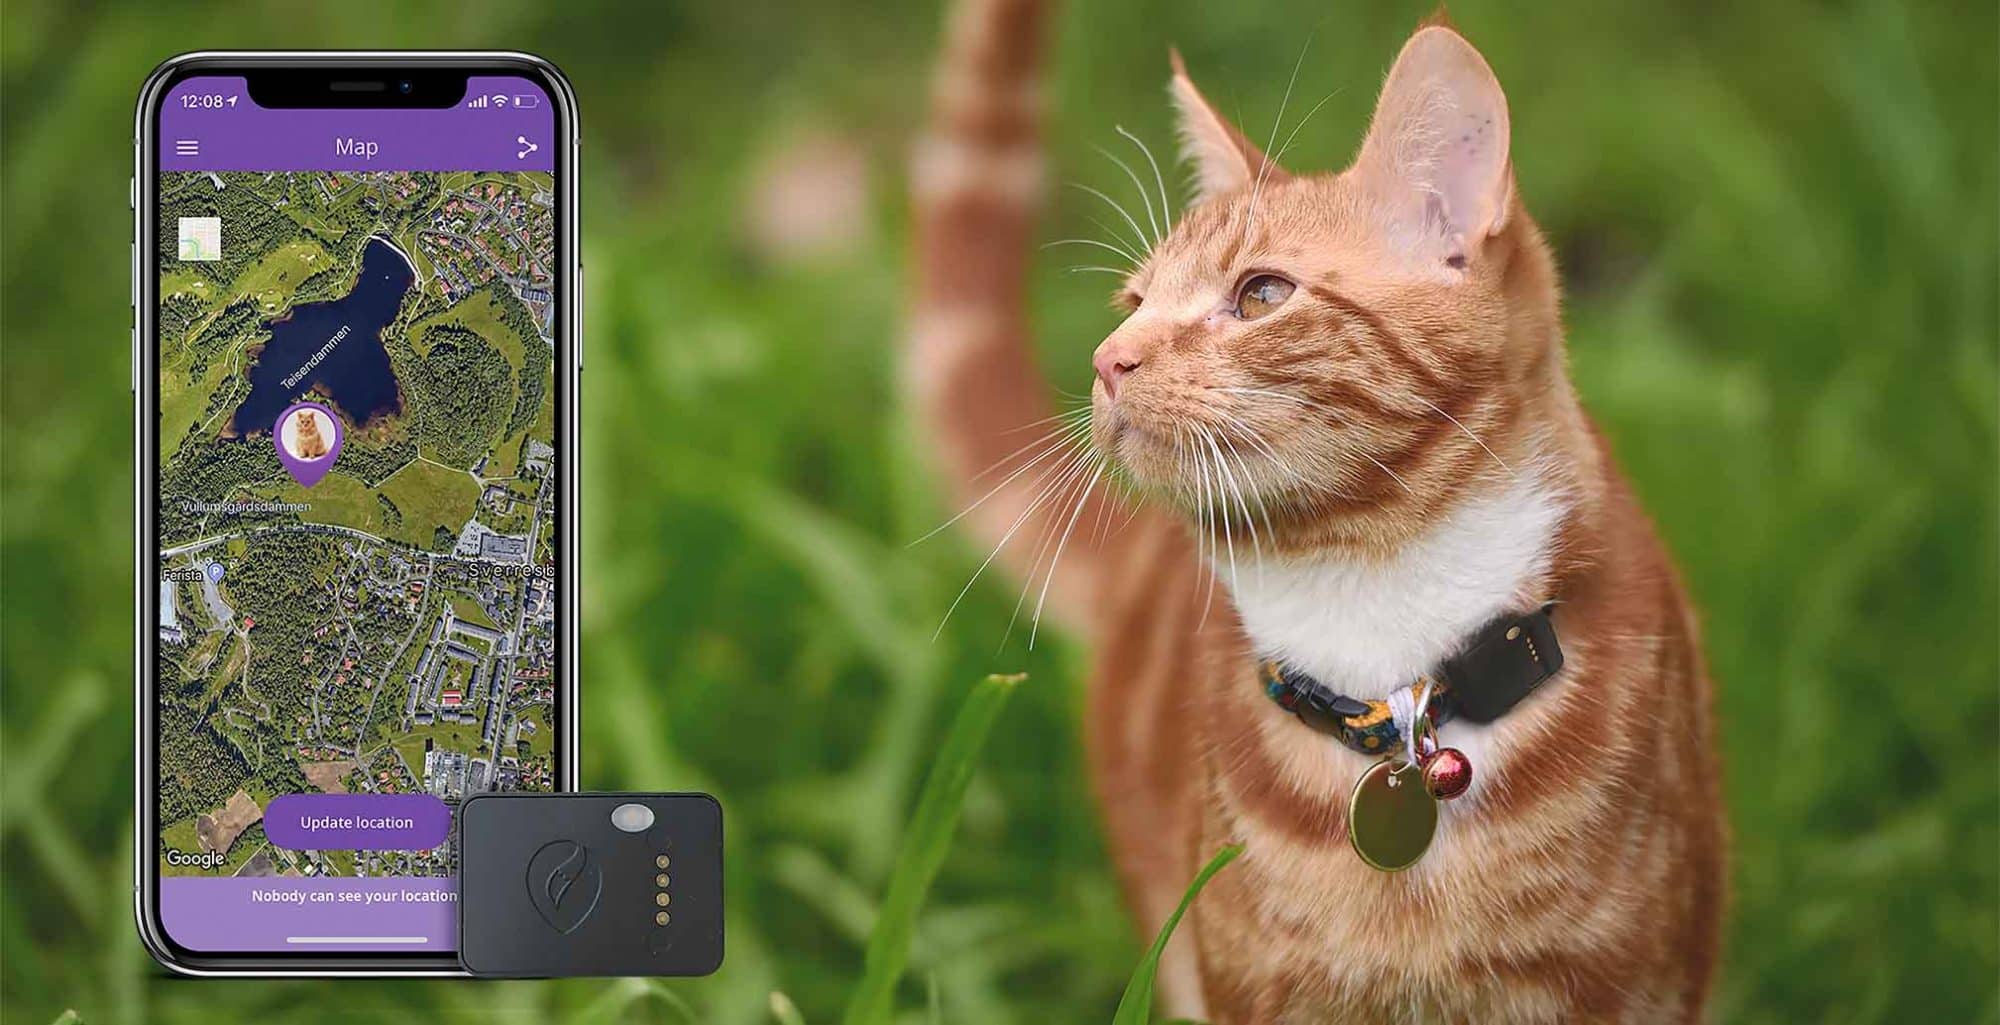 GPS para gatos - ¡Un rastreador GPS con alcance global!